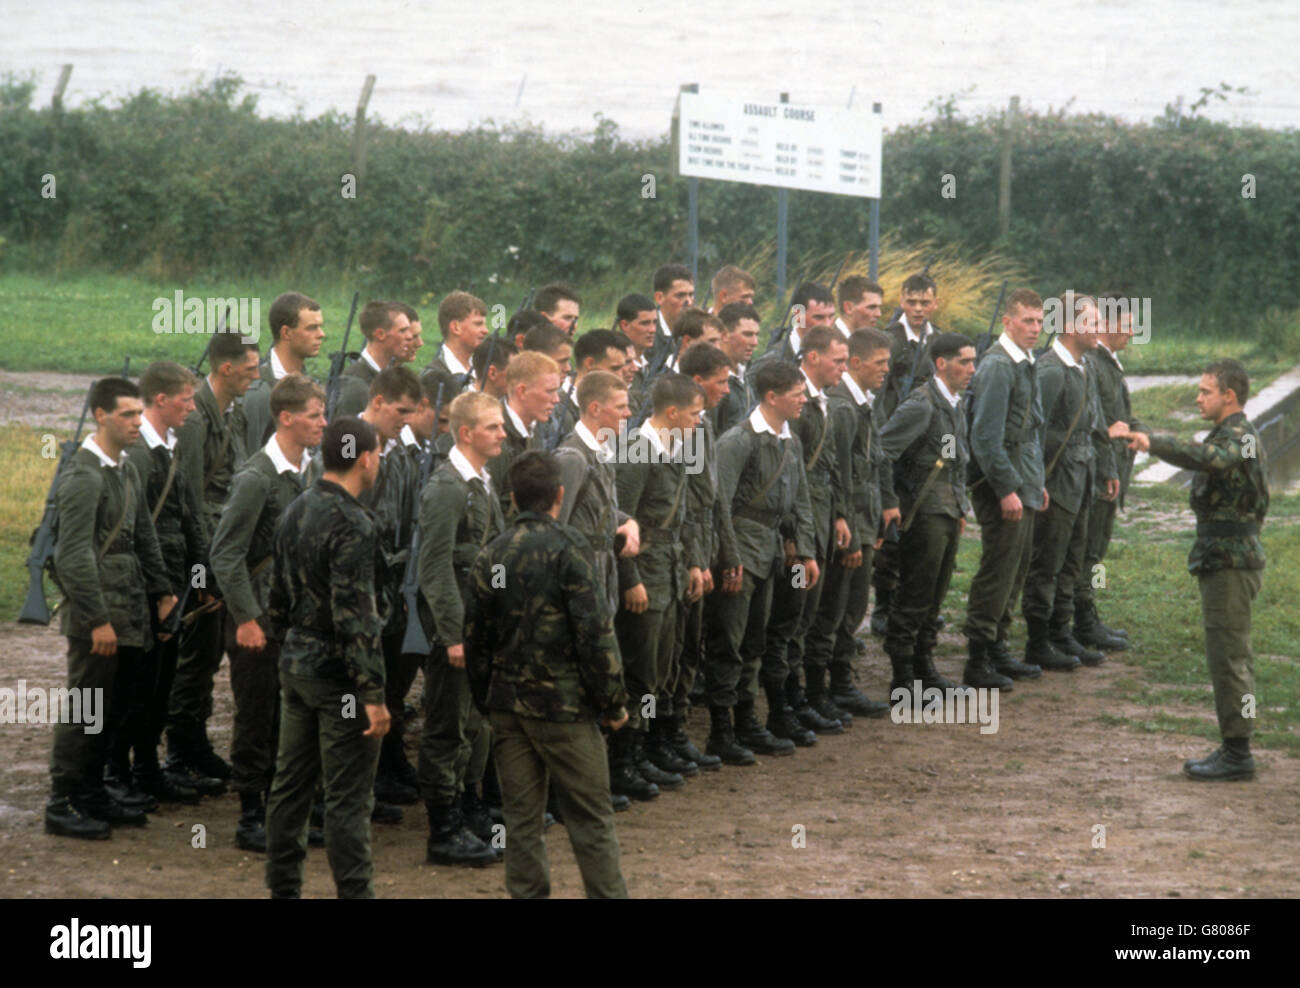 Il giovane ufficiale recluta la parata al Royal Marine Commando Training Center di Lympstone, Devon. Il Principe Edoardo, di 22 anni, inizierà presto un addestramento fisico e mentale a tempo pieno come ufficiale Royal Marine il mese prossimo. Foto Stock